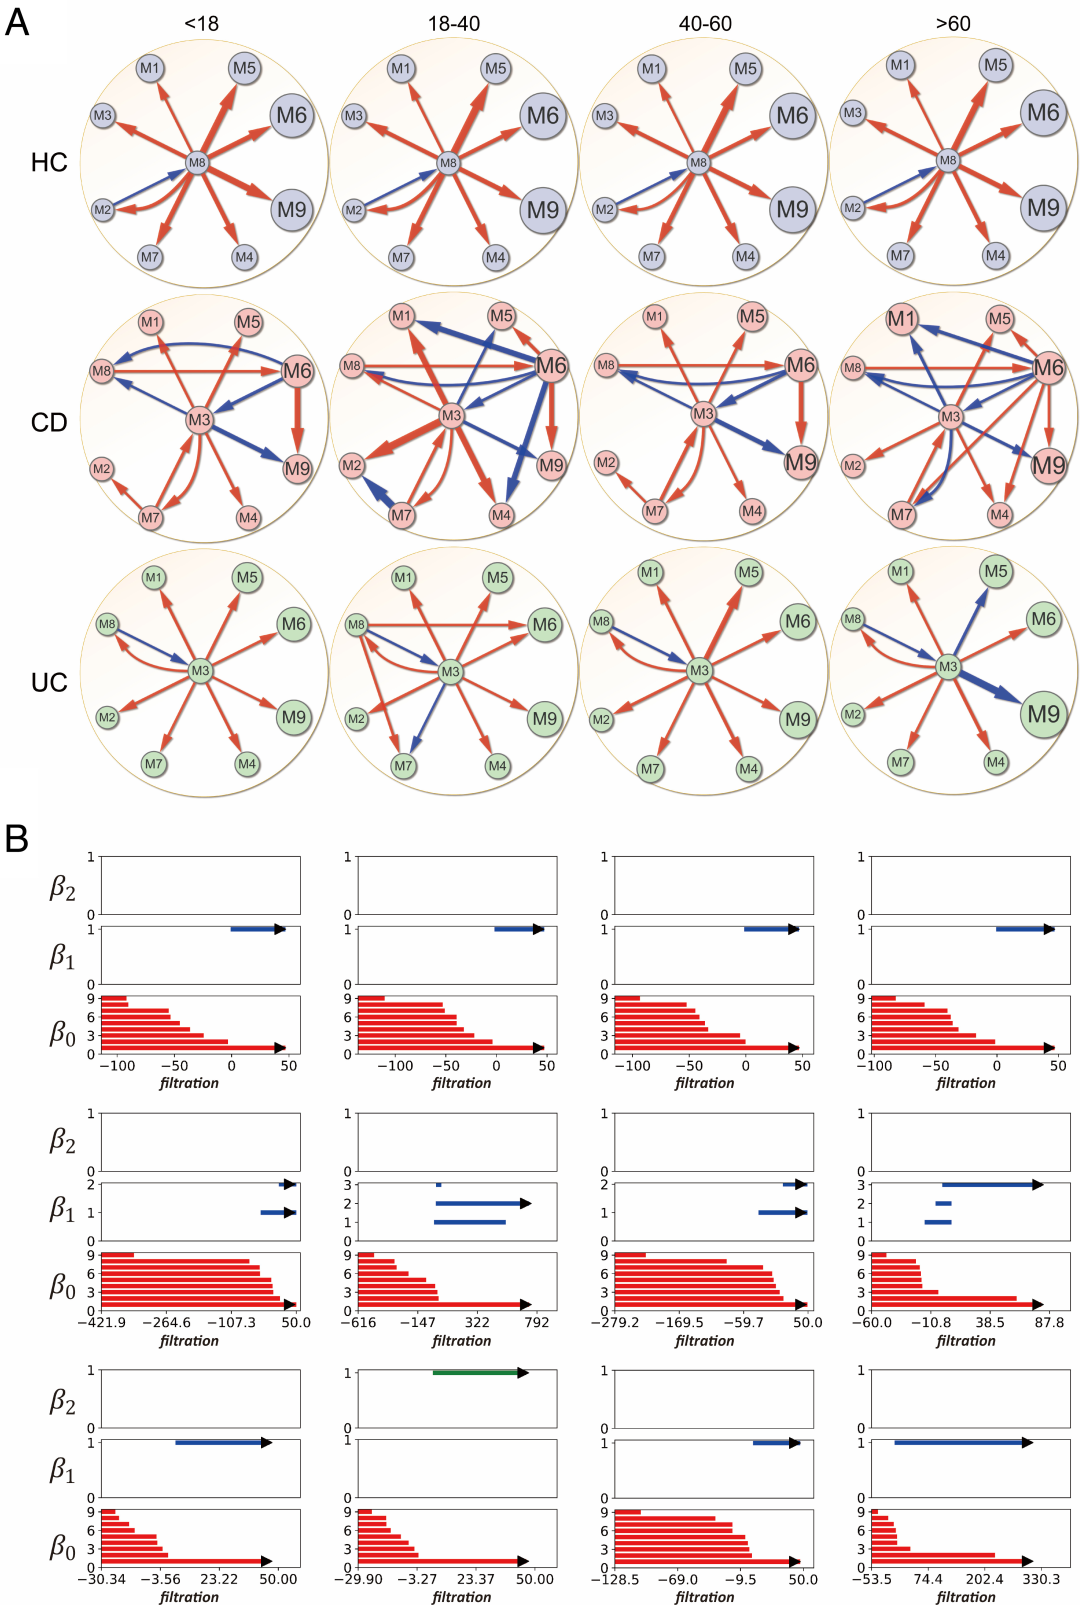 PNAS速递：基于复杂网络与演化博弈，研究复杂疾病代谢特征